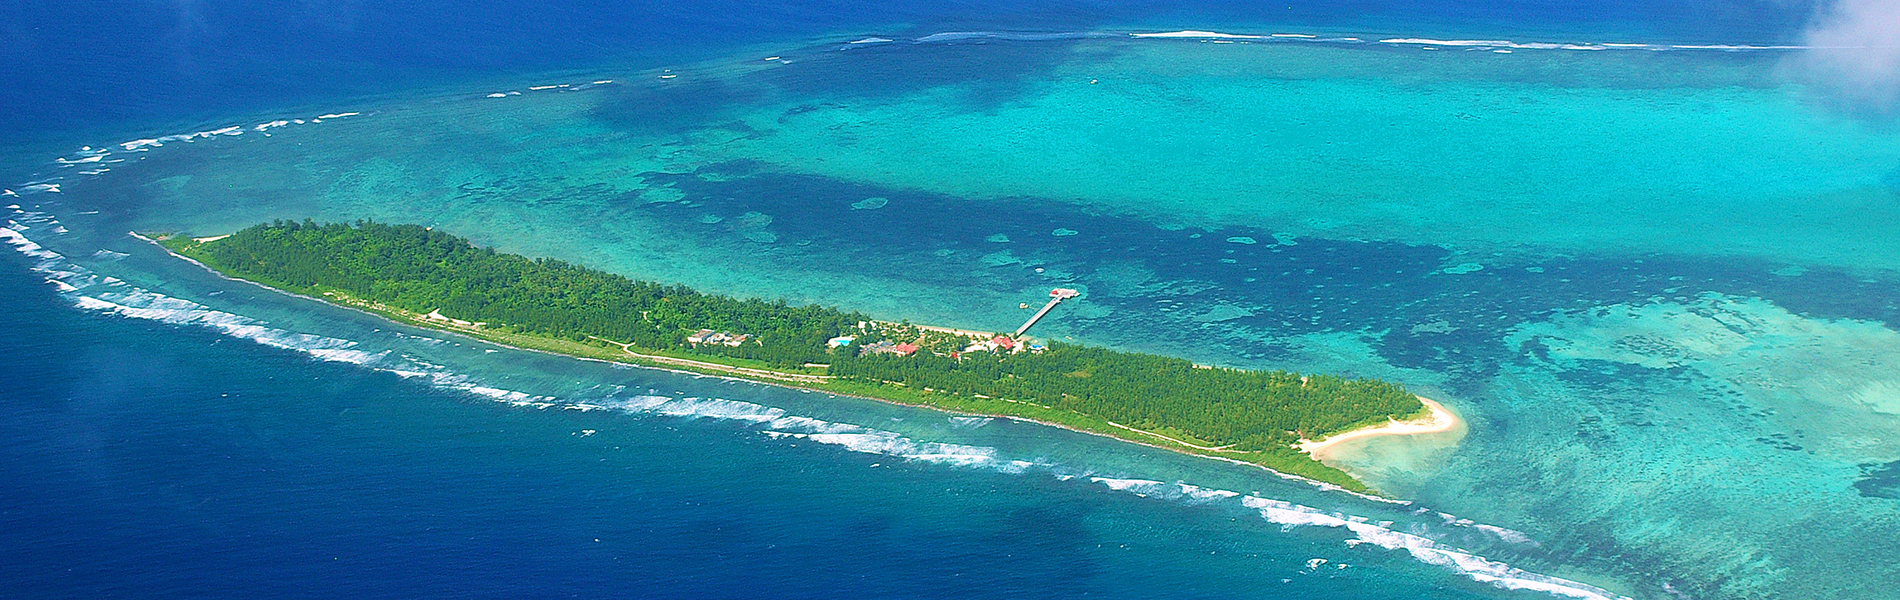 Cocos island